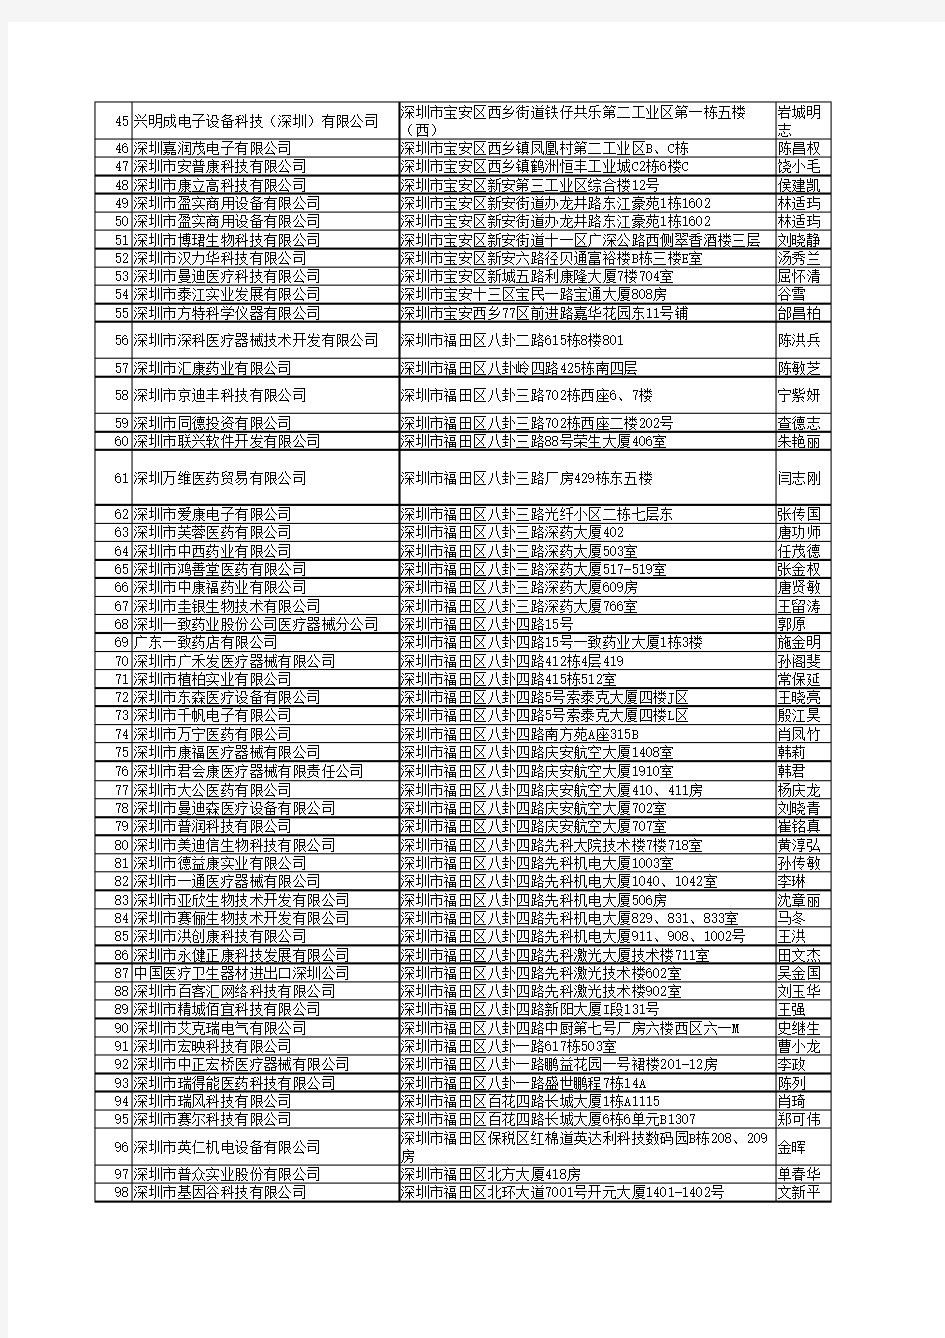 2010年最新深圳医疗器械公司名单